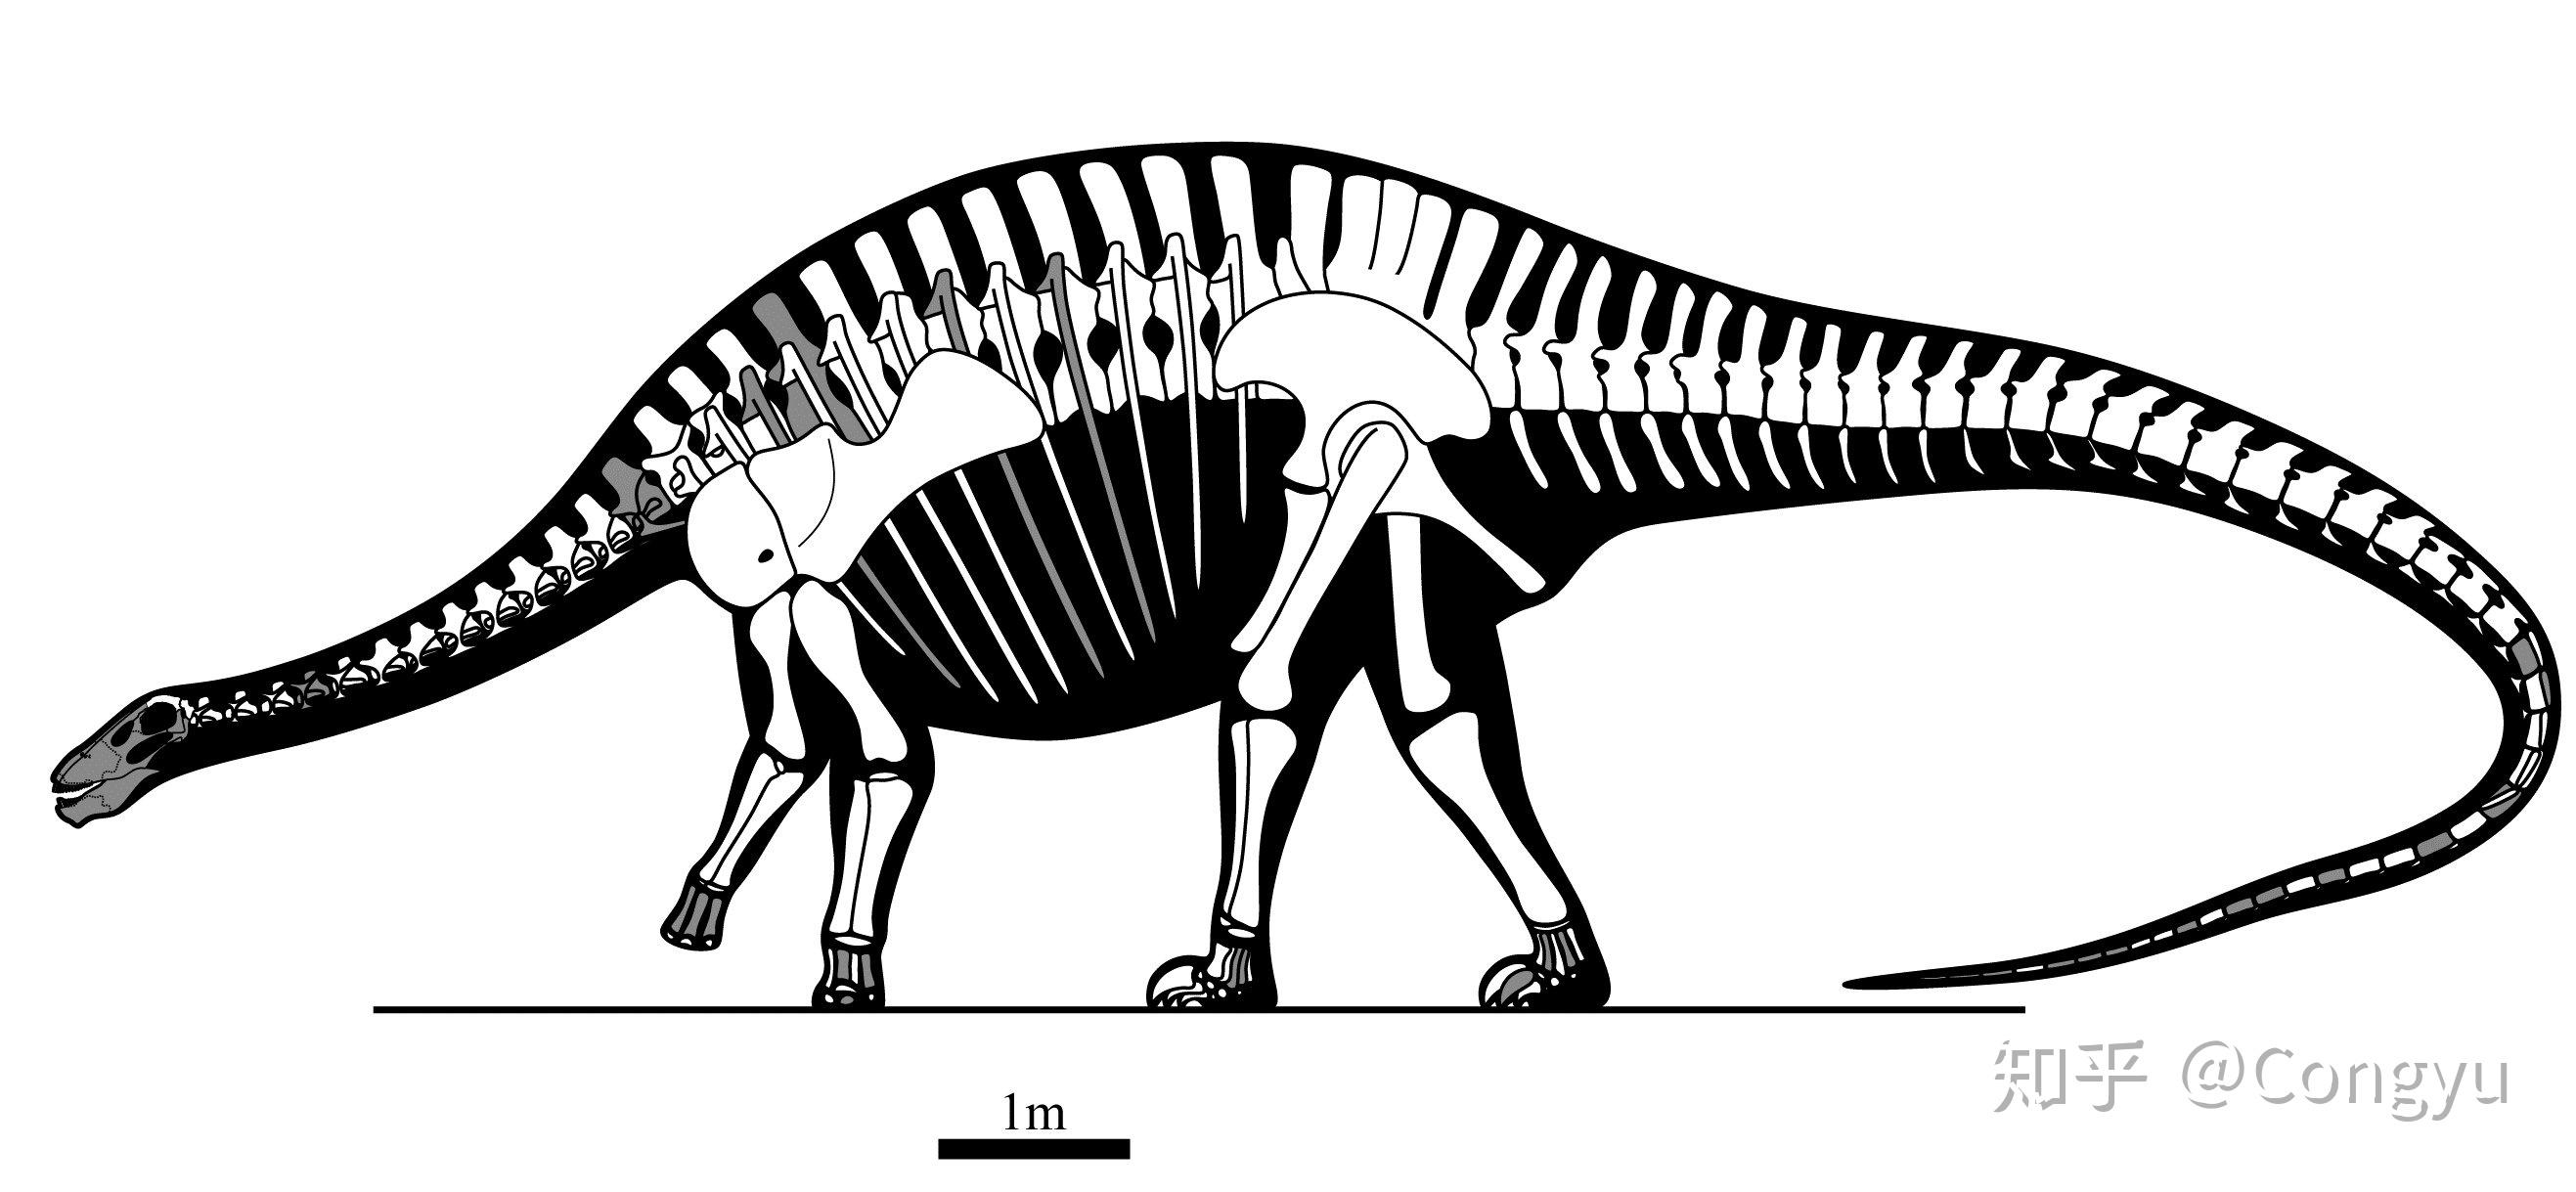 恐龙中所有的大类群都在中国有化石发现,蜥脚类恐龙也不例外.